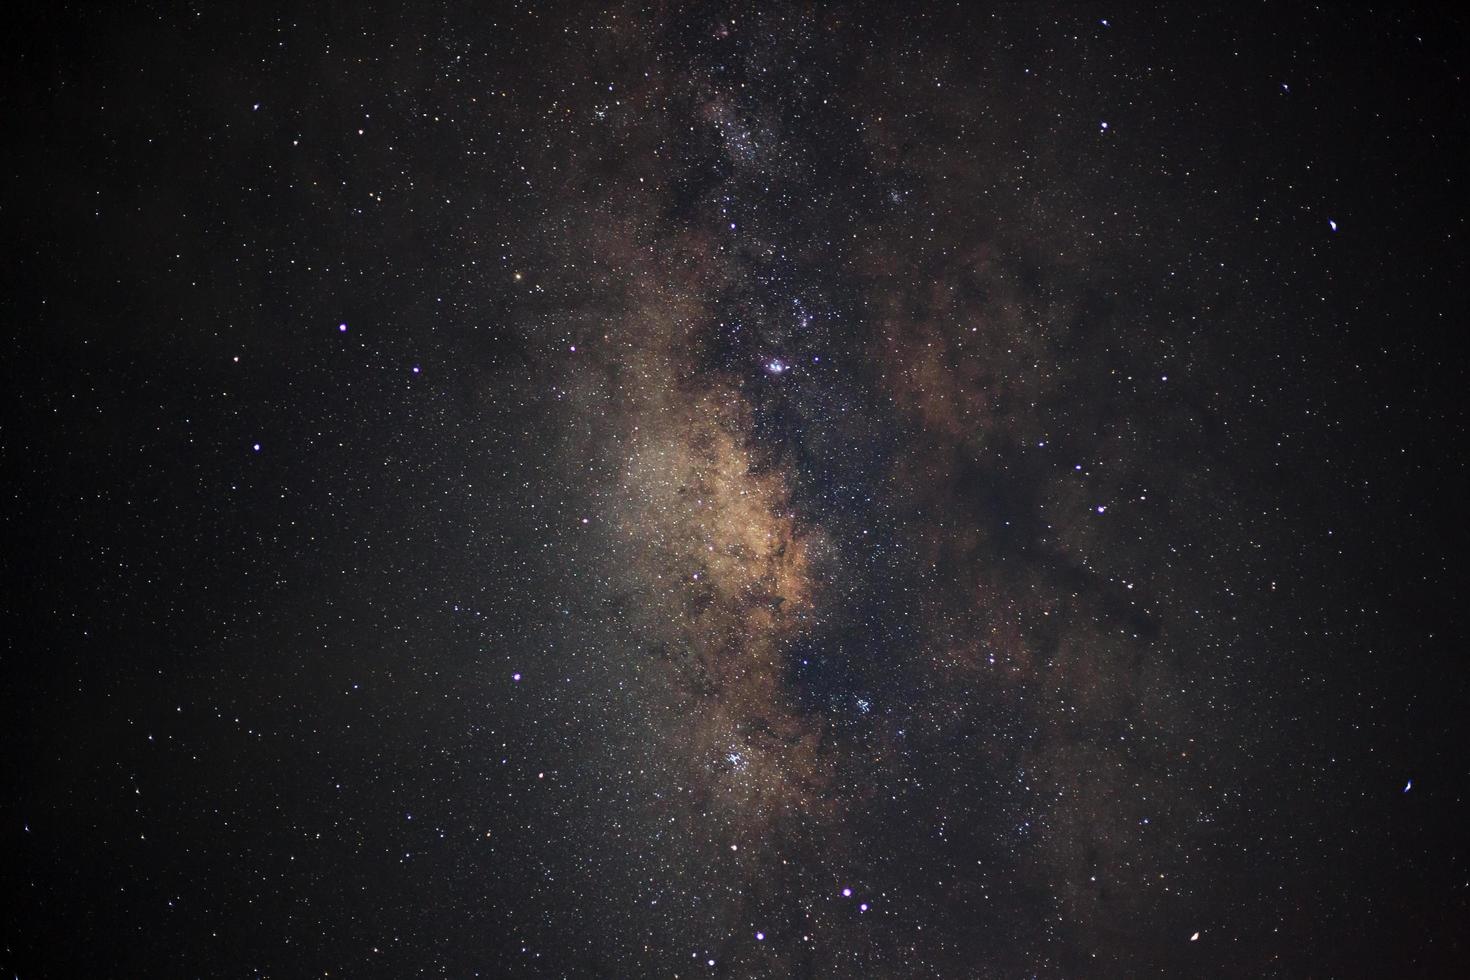 Nahaufnahme der Milchstraße mit Sternen und Weltraumstaub im Universum foto